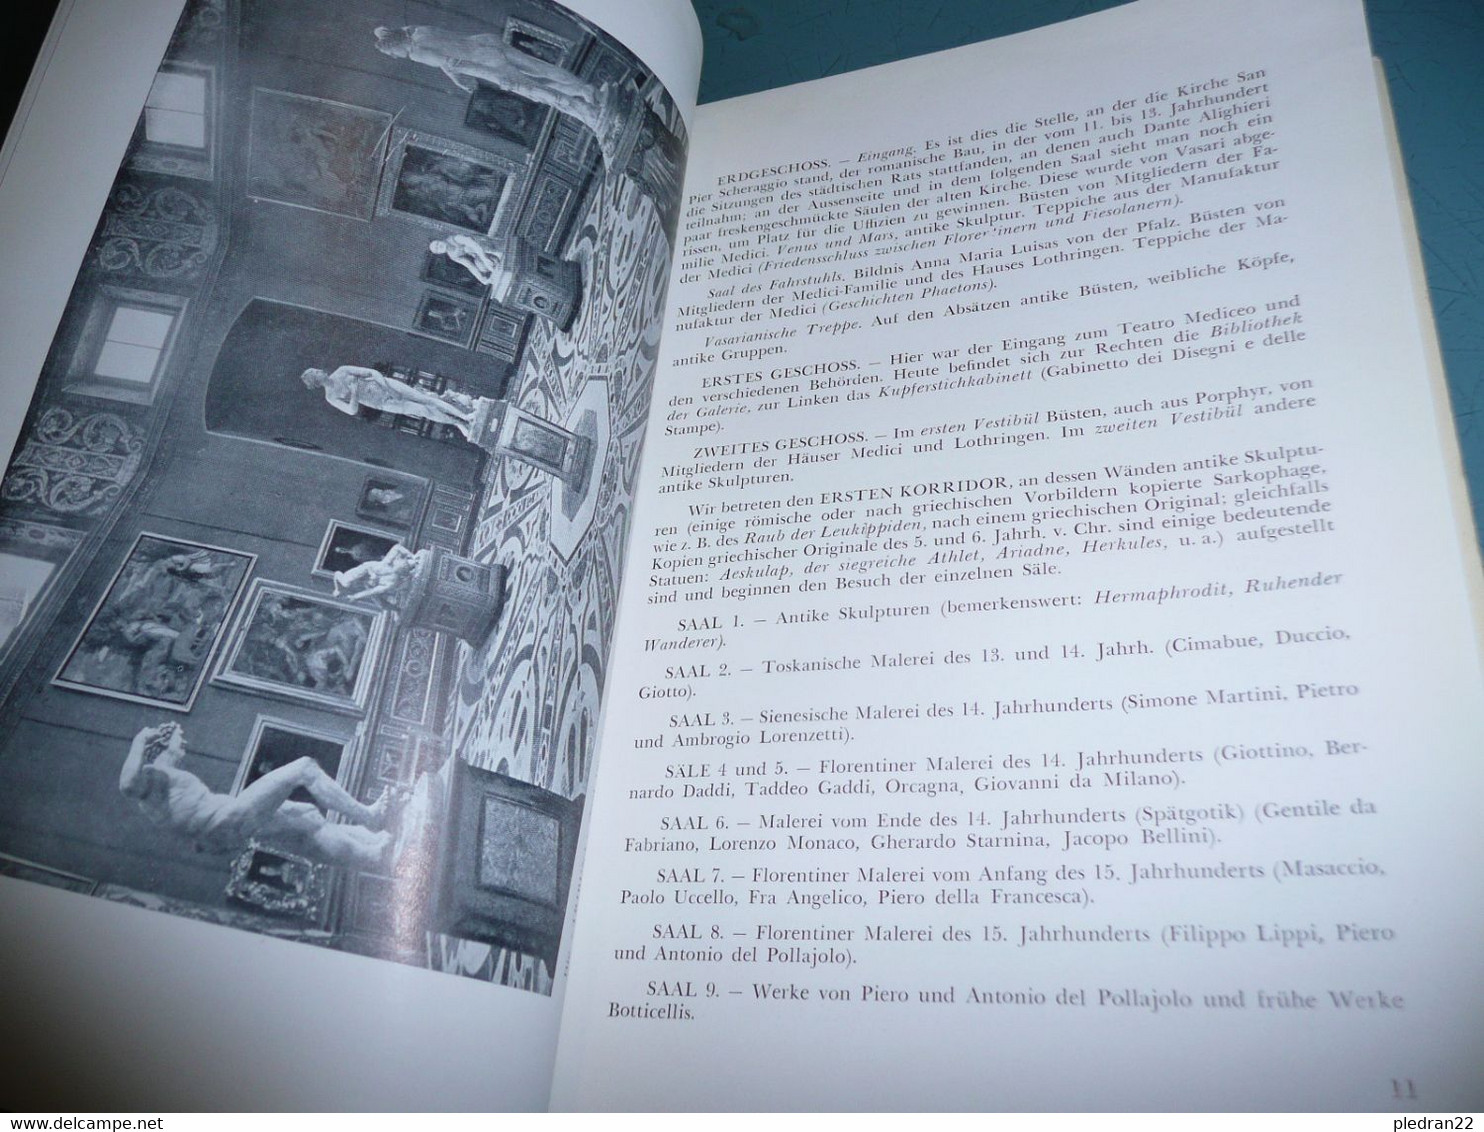 CESARE FASOLA DIE GALERIE DER UFFIZIEN IN FLORENZ GAKERIE DES OFFICES A FLORENCE ALBUM FÜHRER 1955 VERSION EN ALLEMAND - Pintura & Escultura